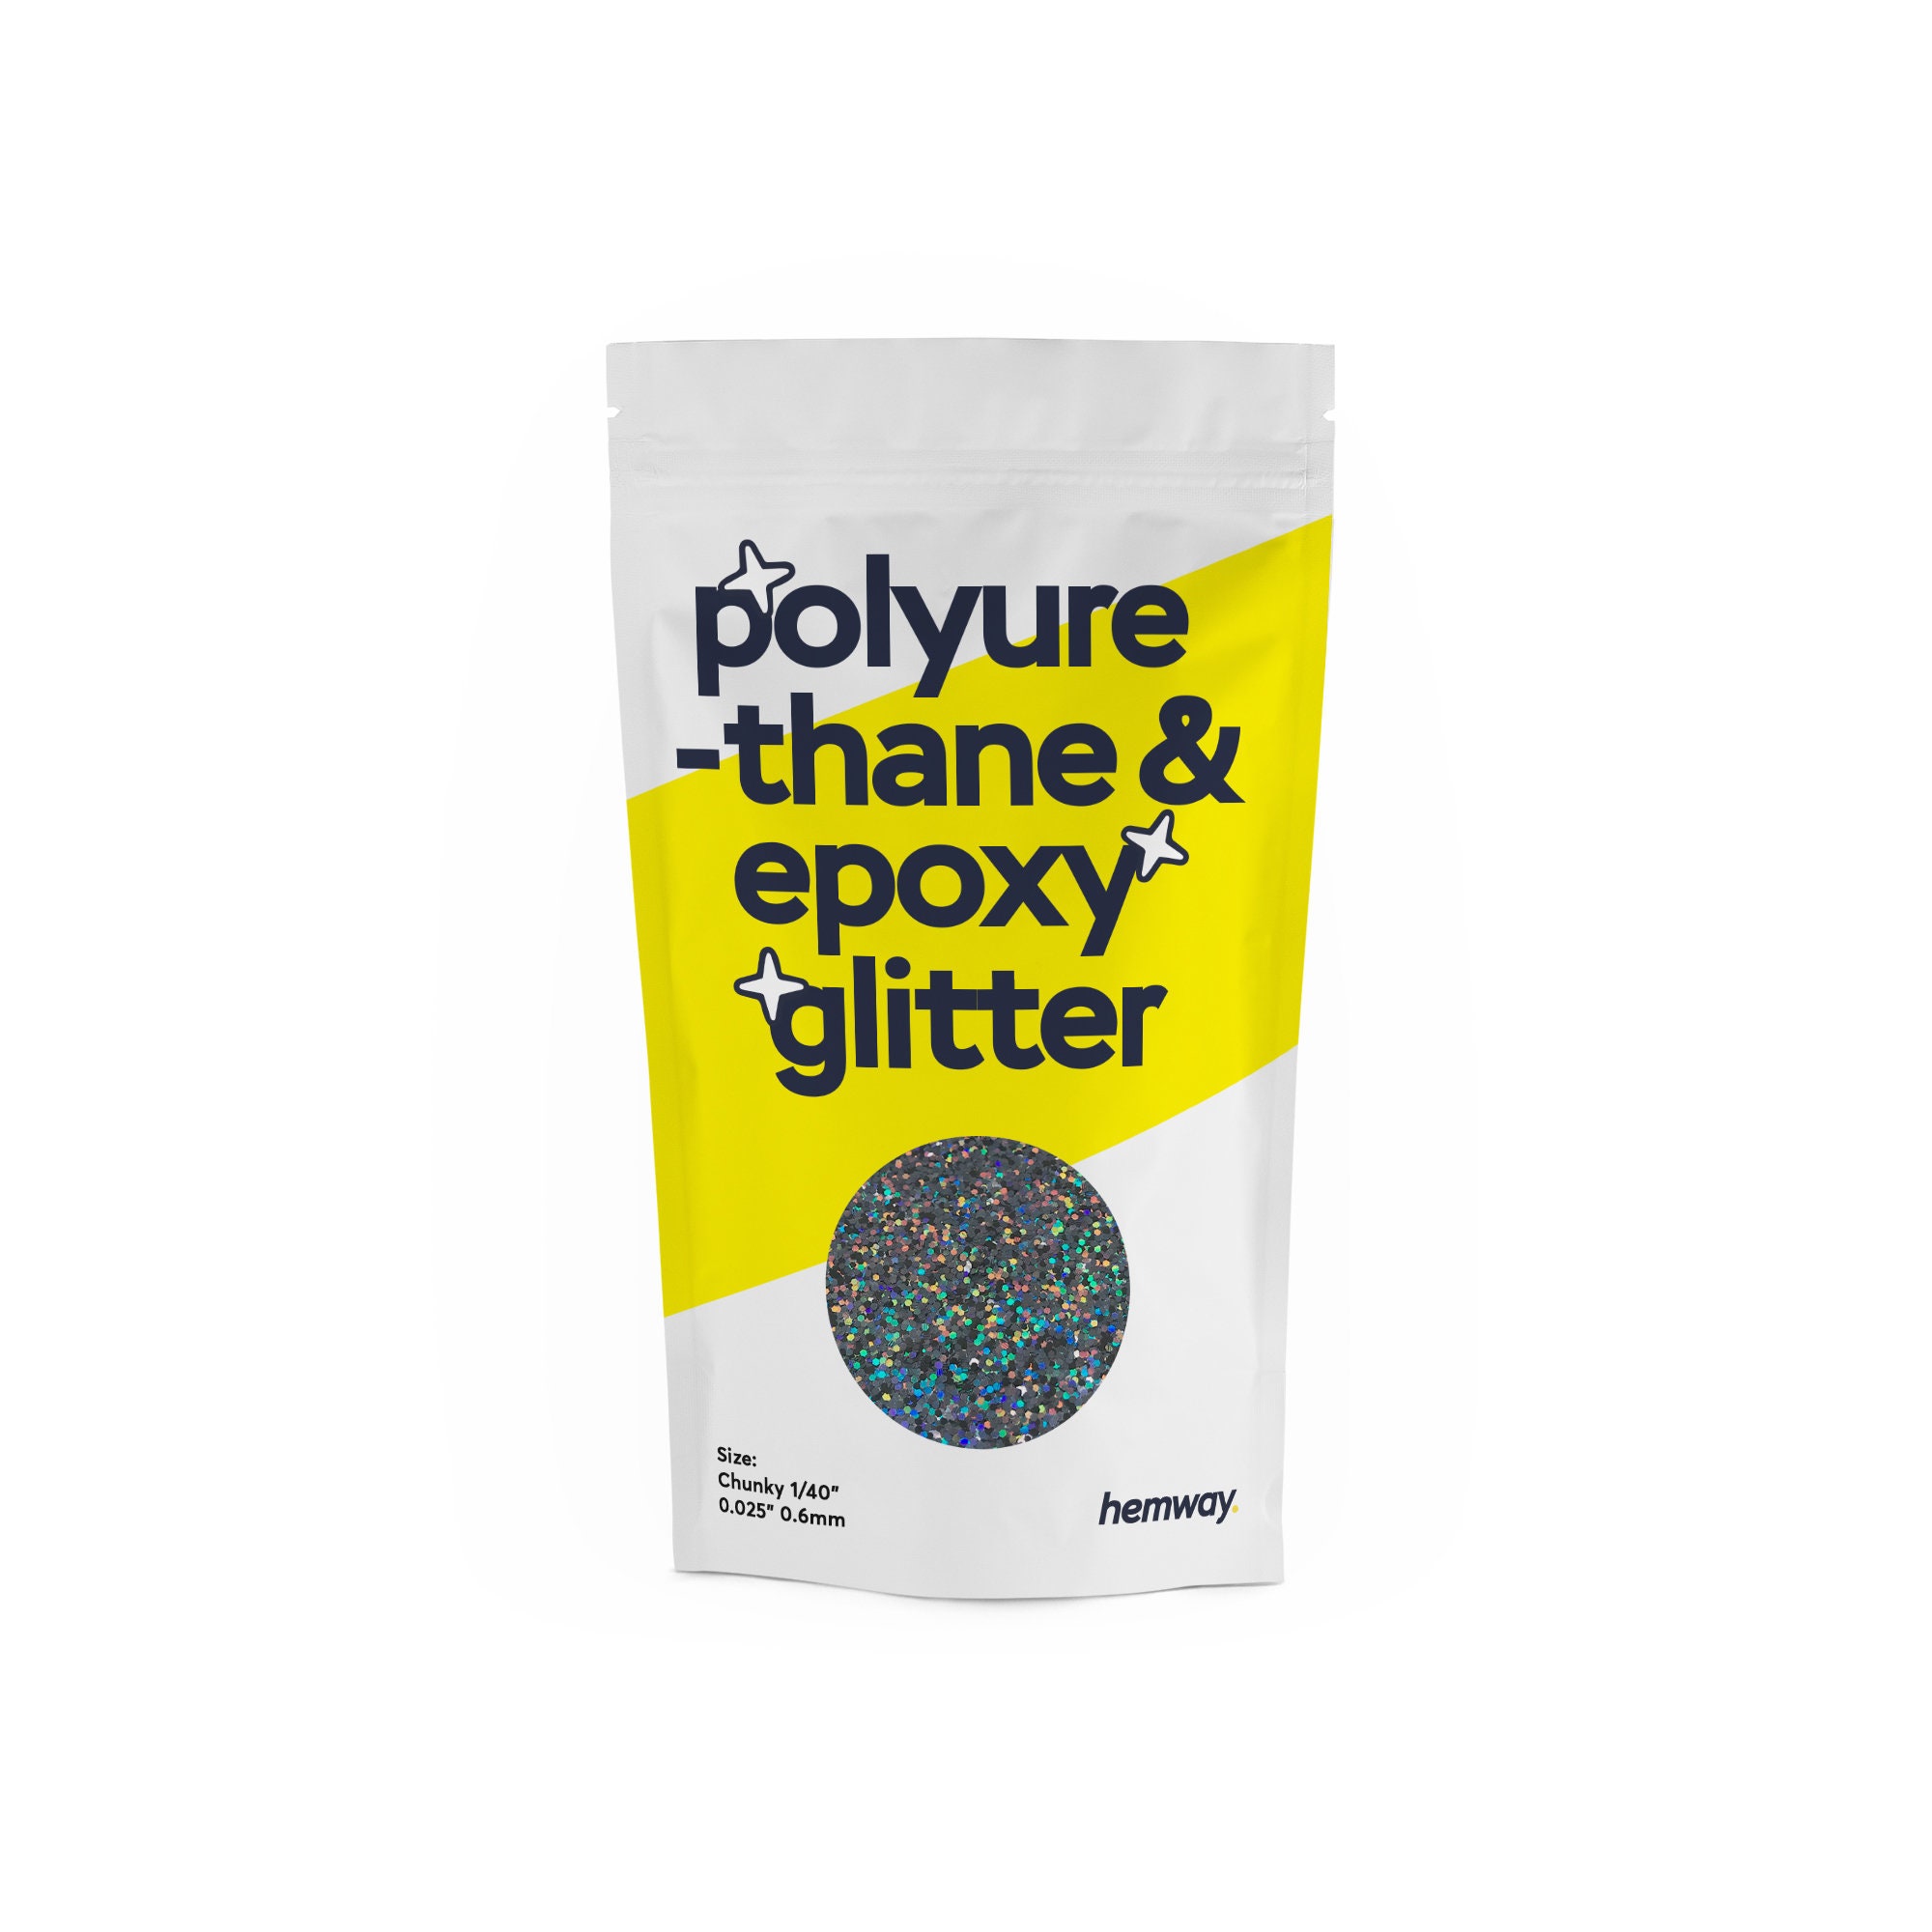 Hemway Polyurethane & Epoxy Resin Glitter - Chunky 1/40 0.025